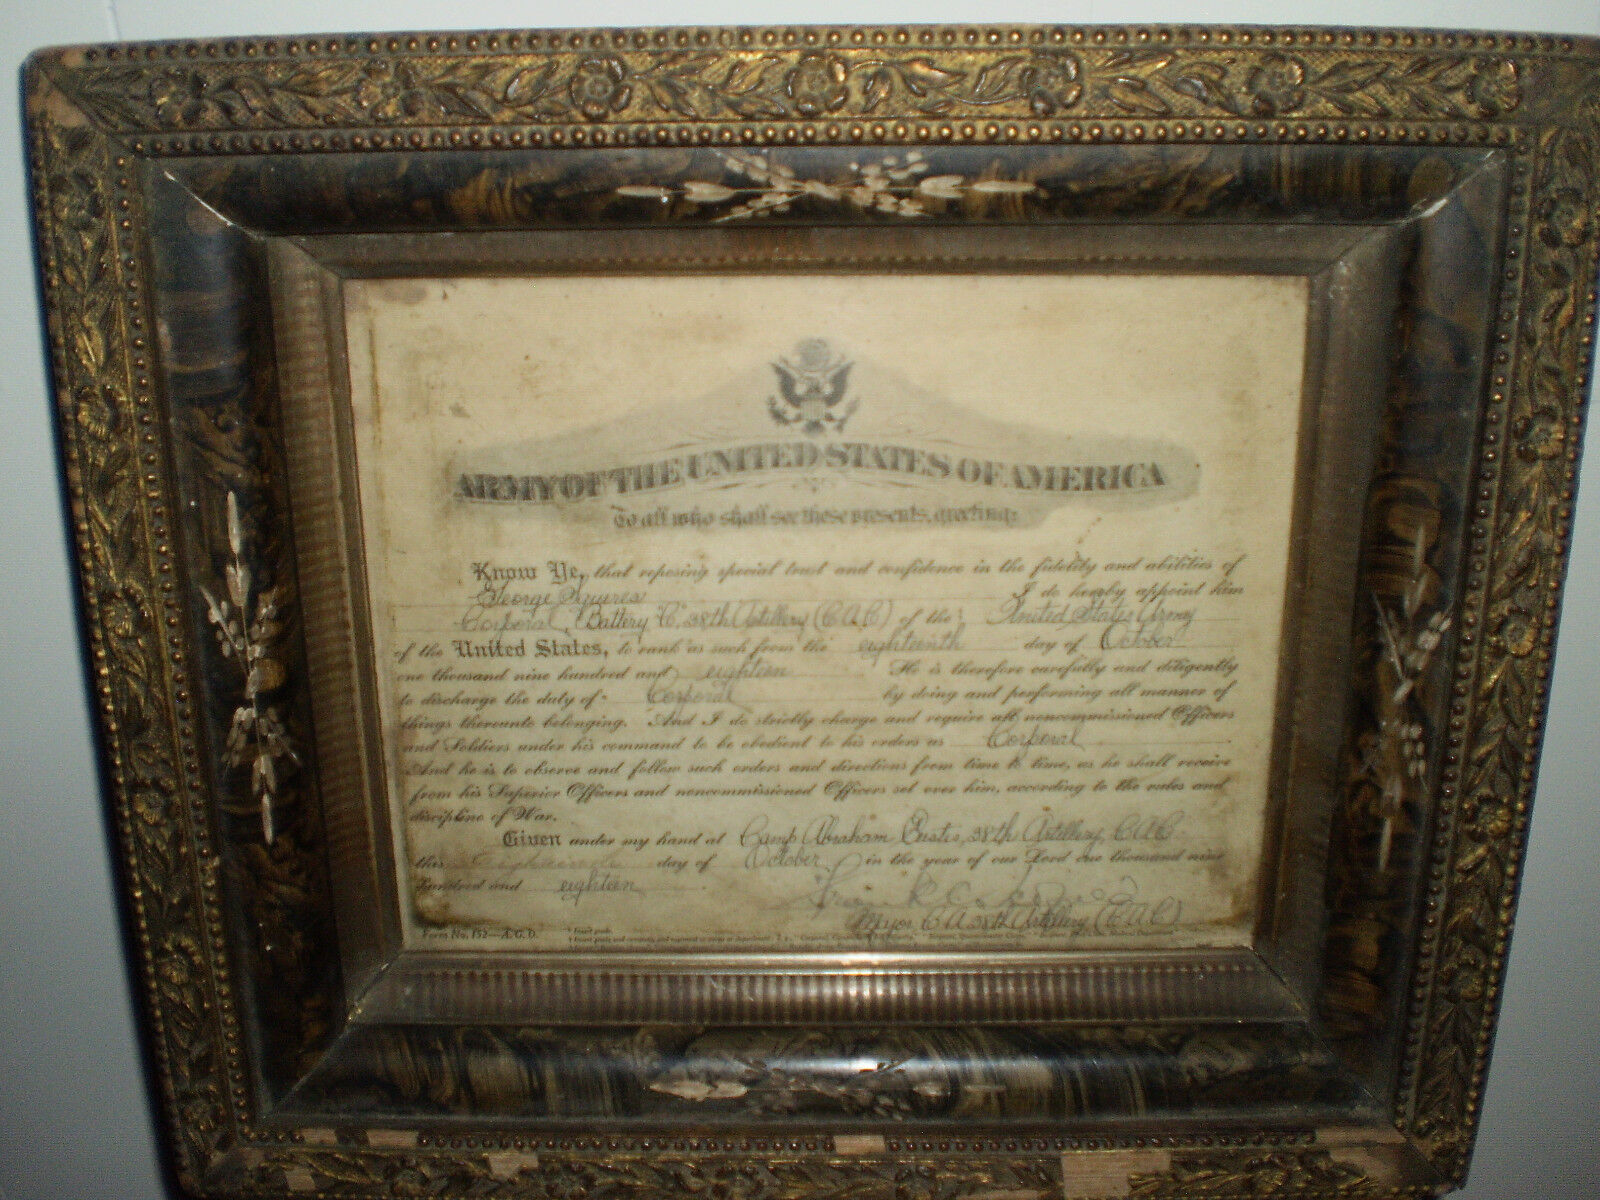 World War I Promotion Certificate in Vintage Frame –Camp Eustis, Va. (Oct. 1918)